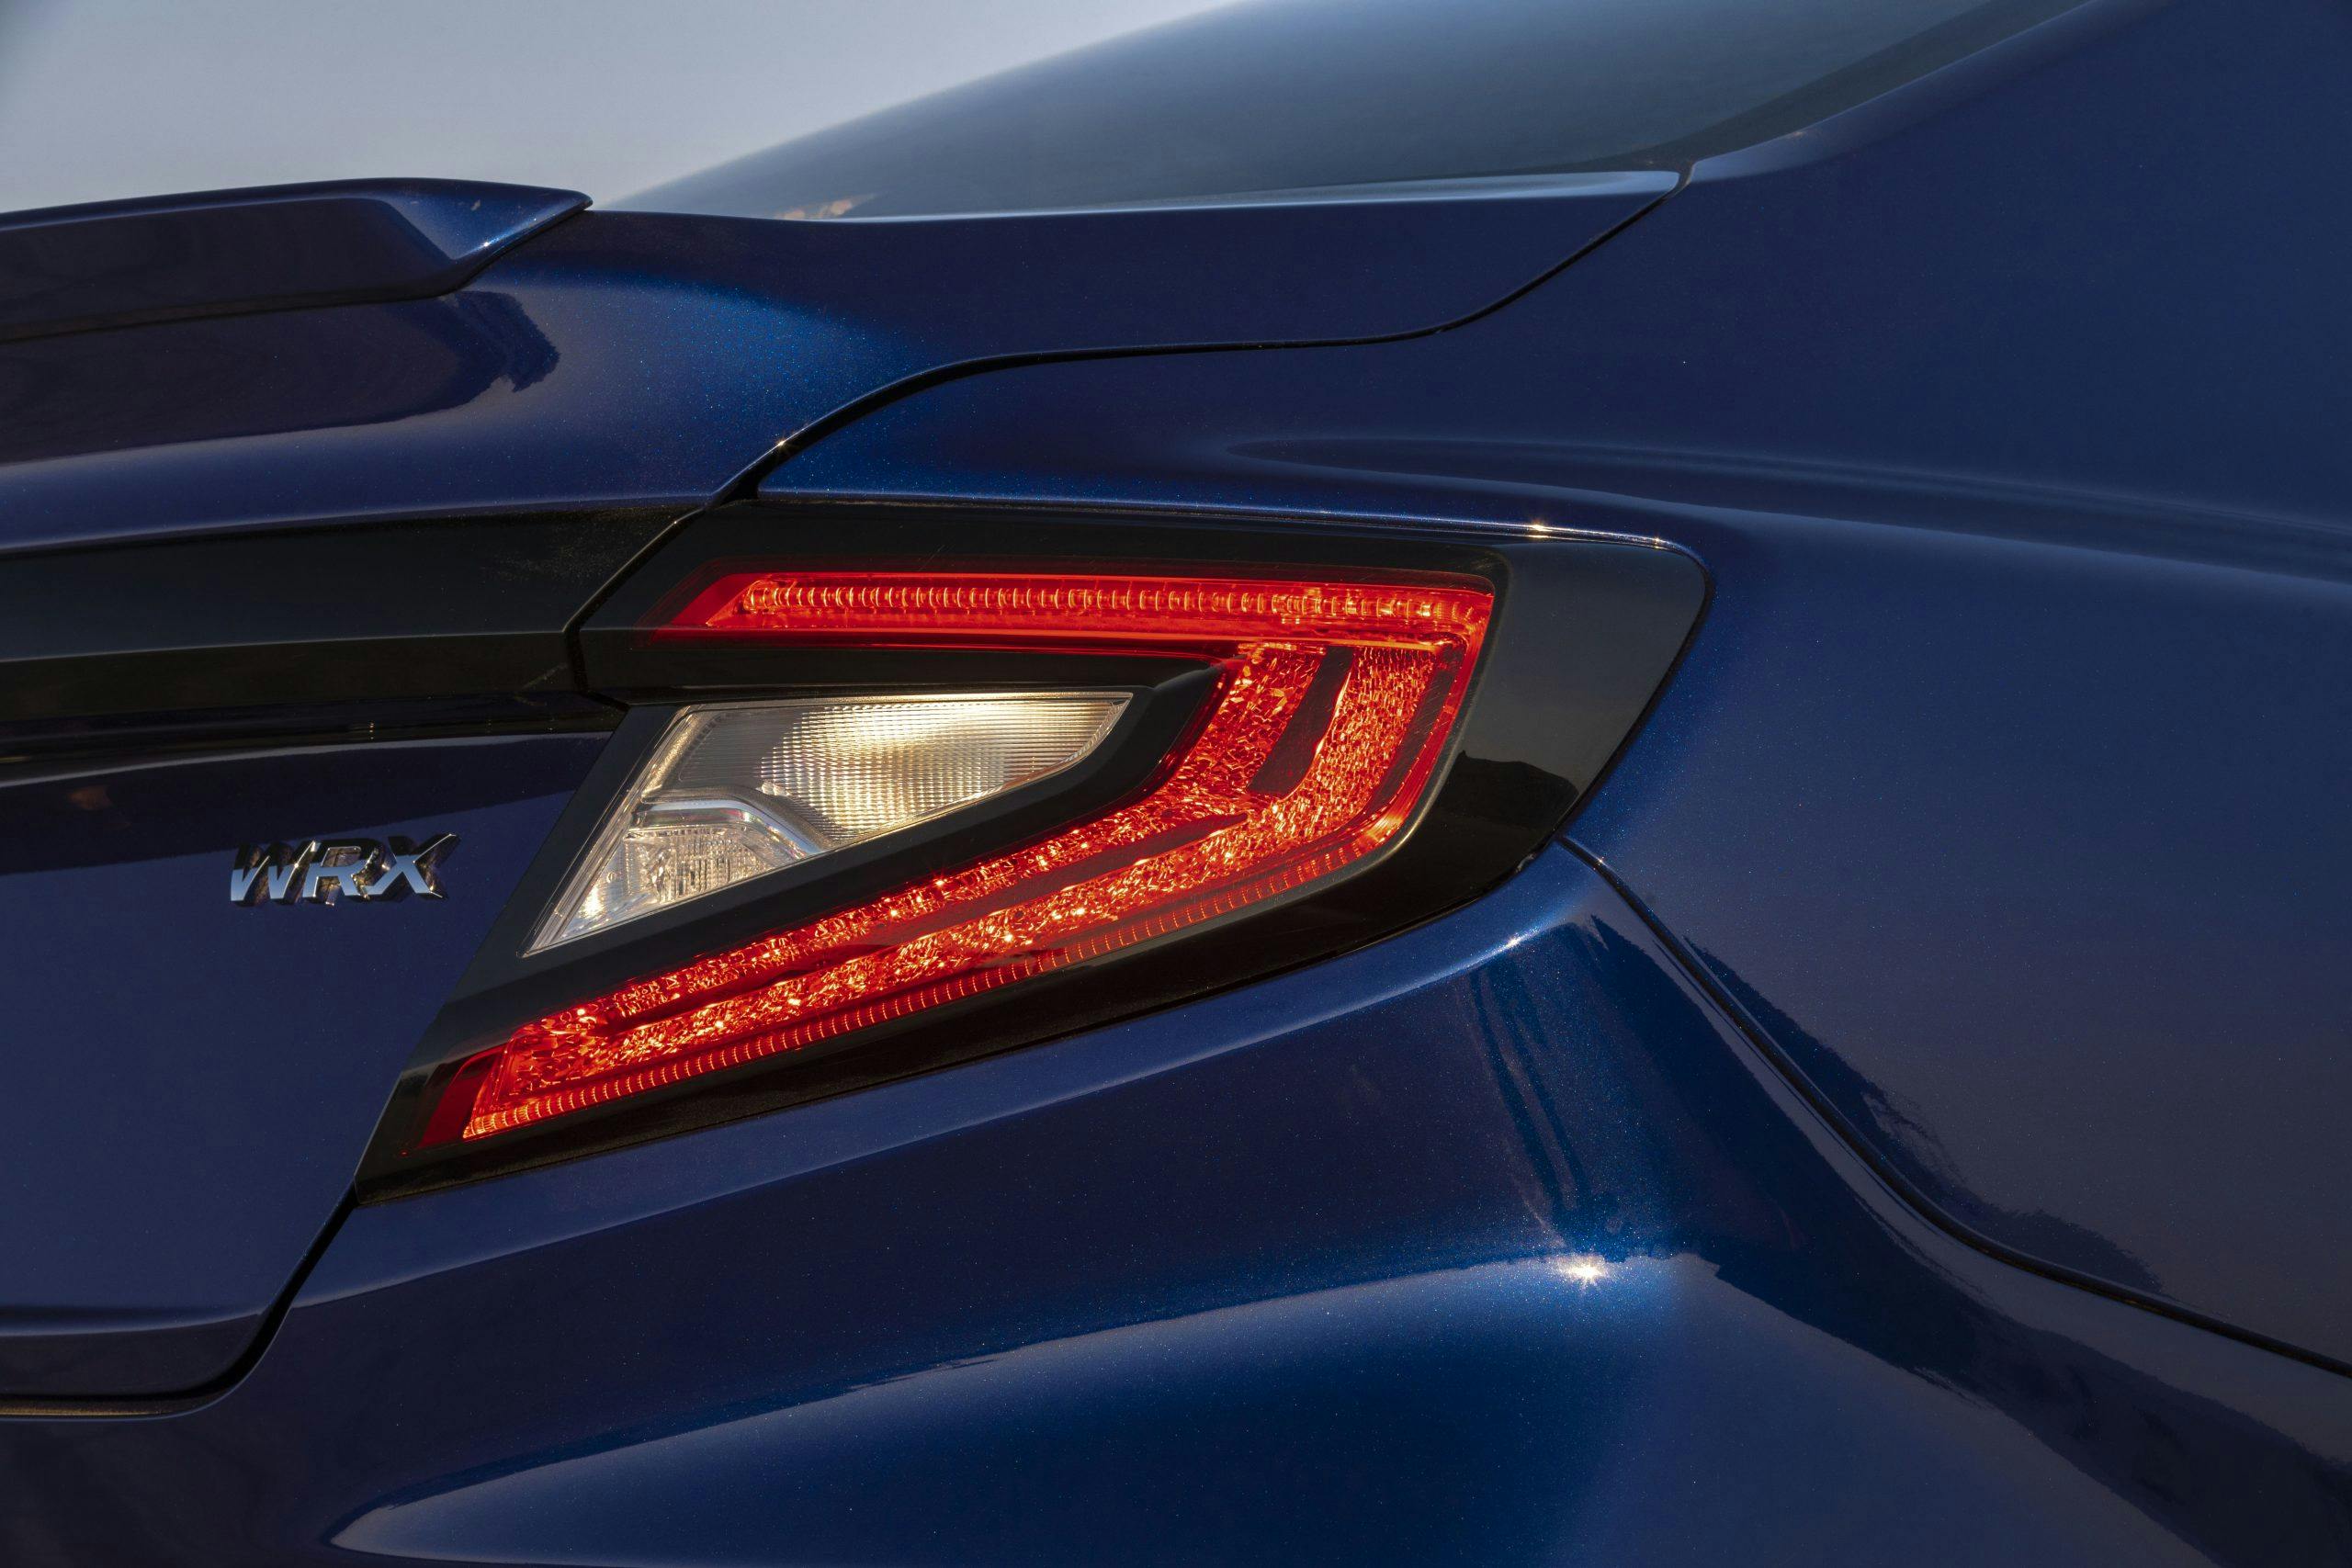 2022 Subaru WRX blue taillight detail